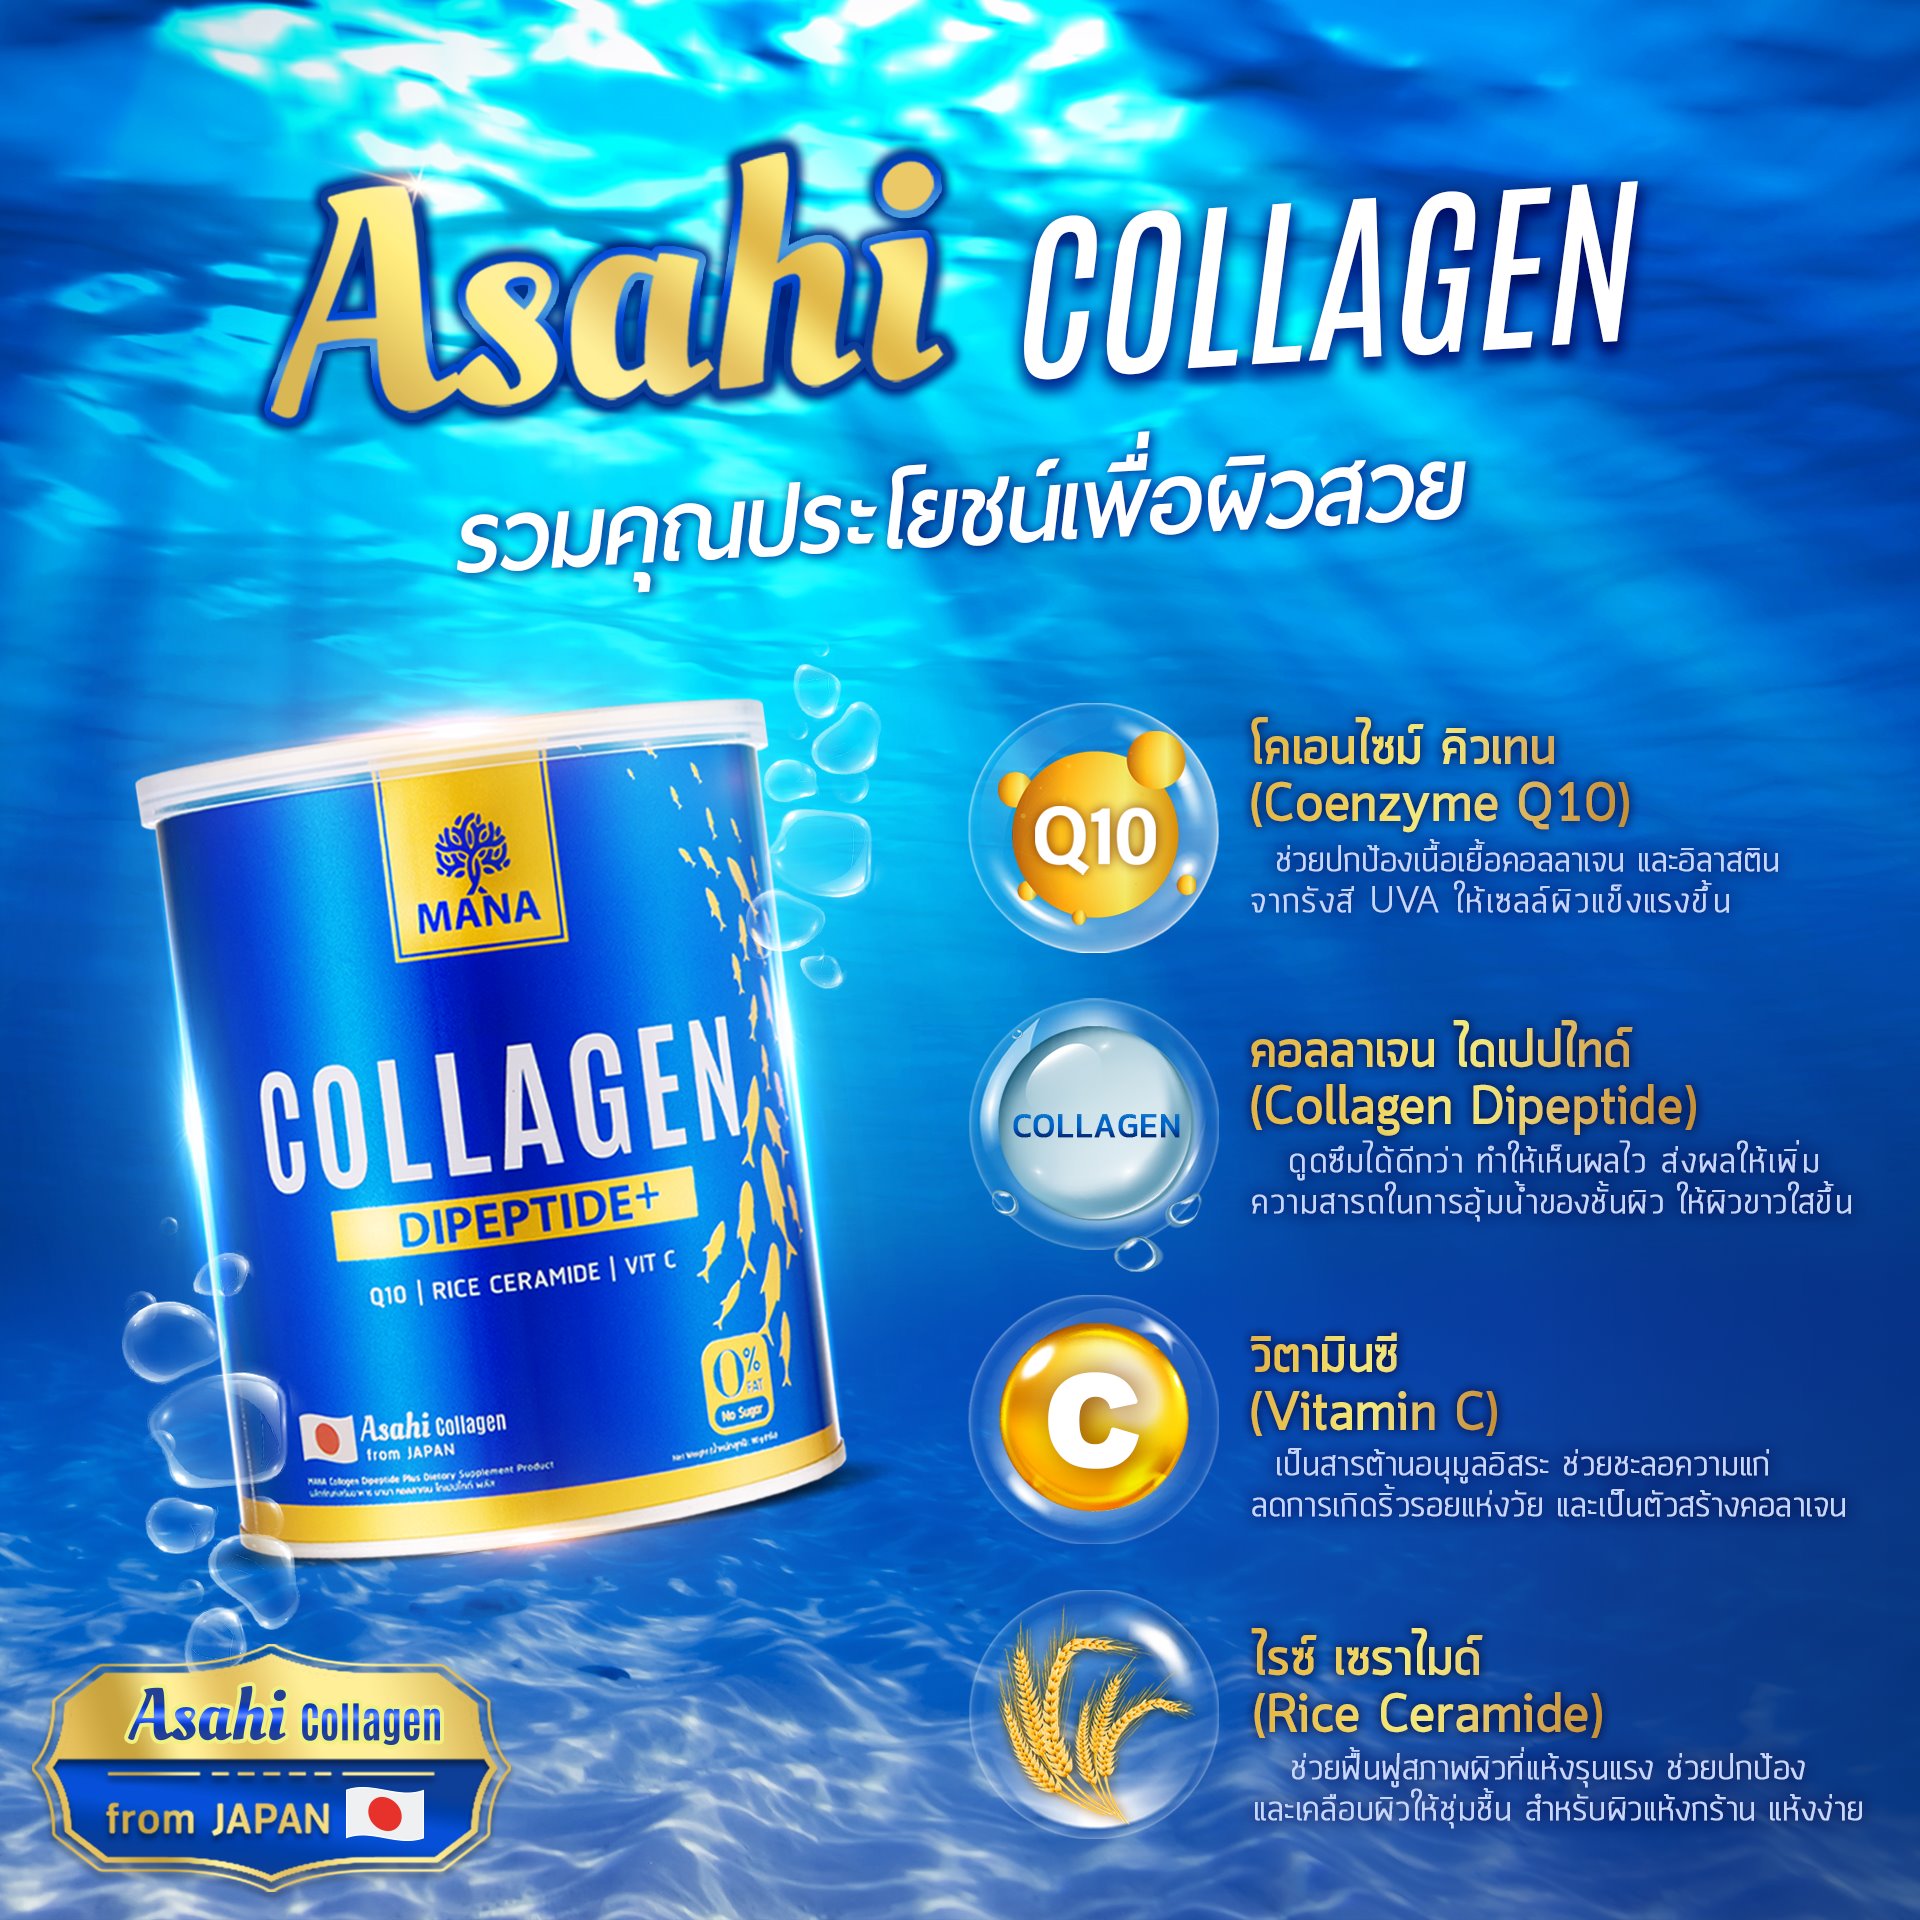 MANA Collagen + MANA Gluta Collagen  มานา คอลลาเจน + กลูต้า คอลลาเจน ญาญ่า คอลลาเจน Dipeptide+ จากประเทศญี่ปุ่น